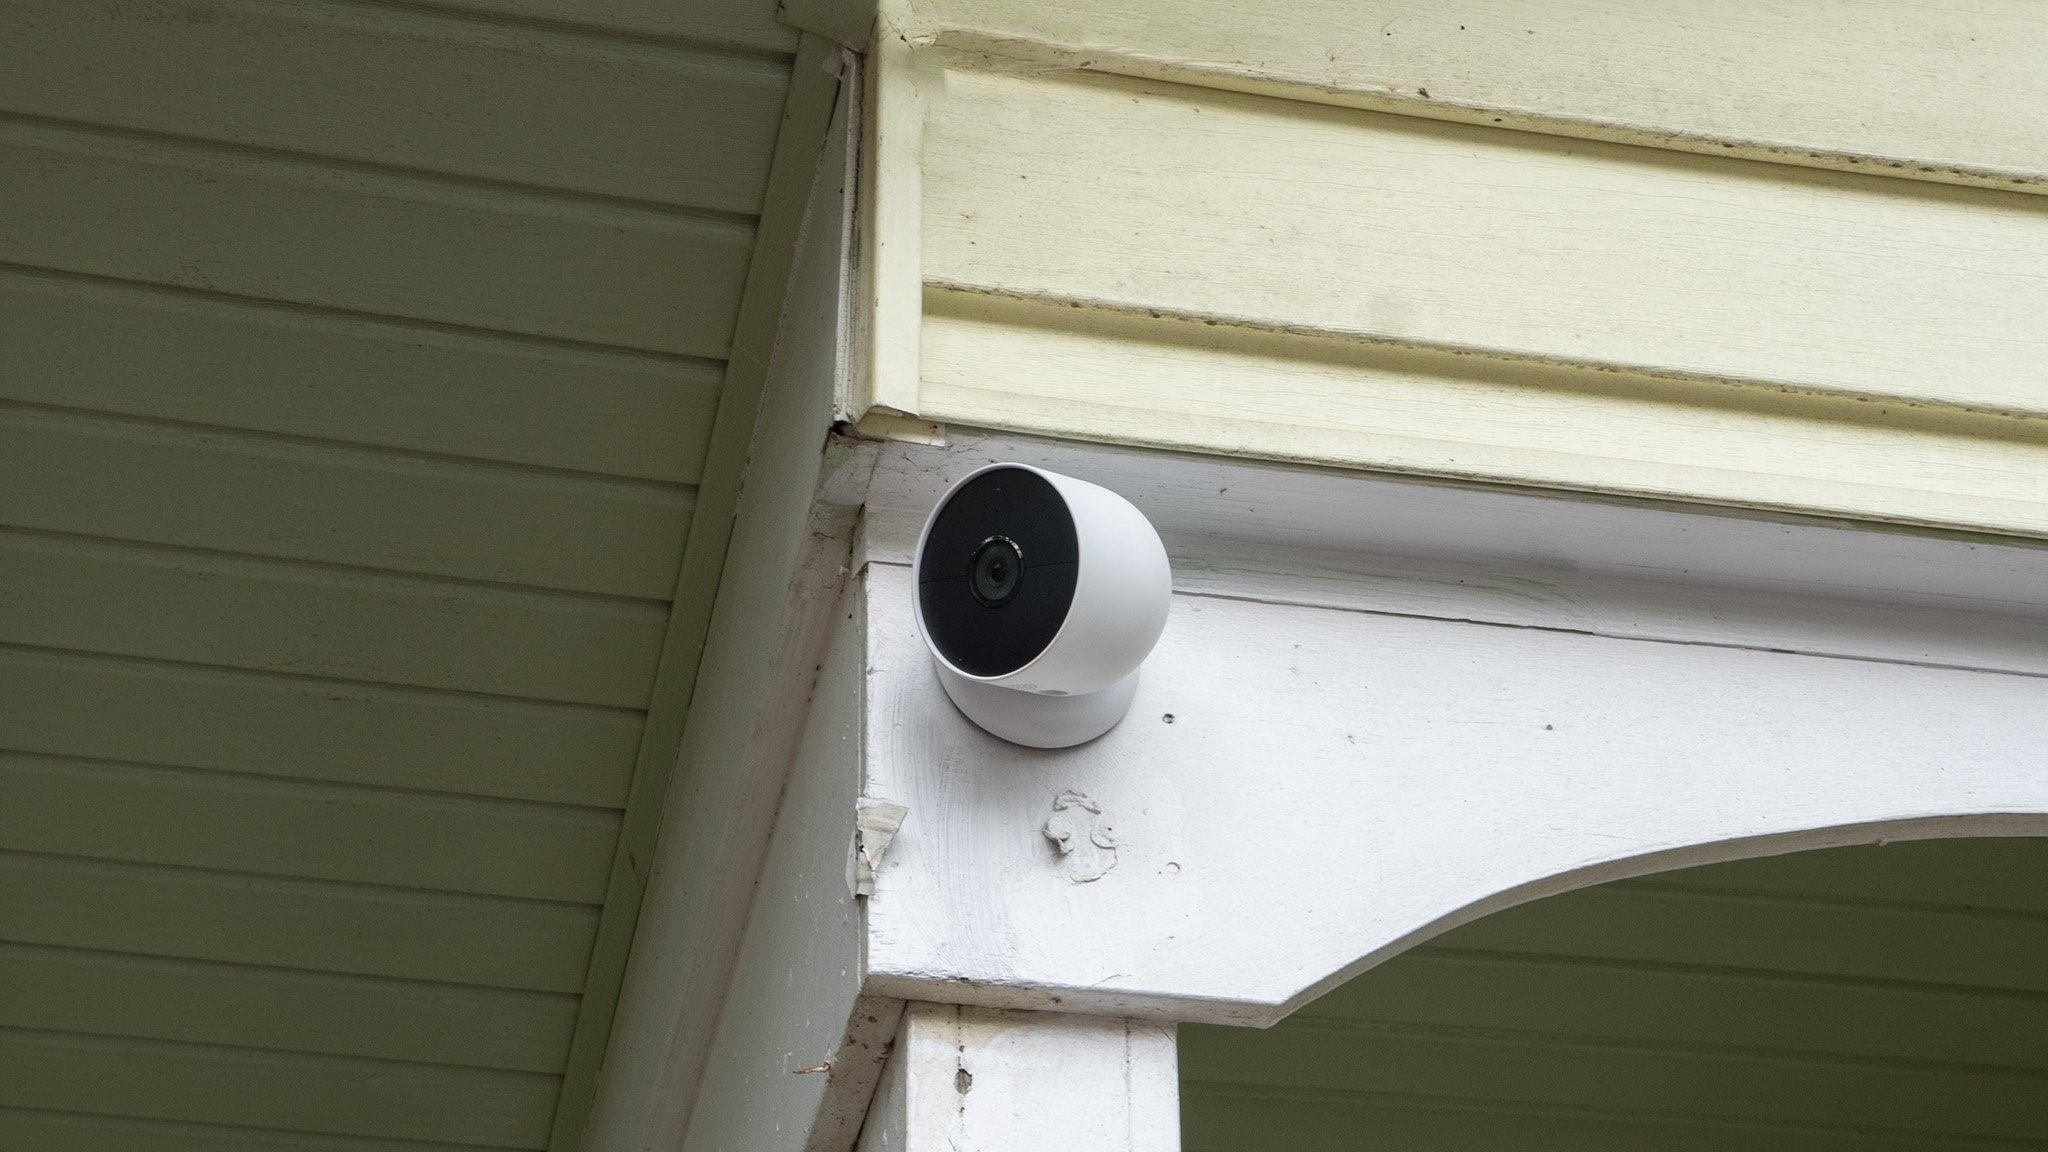 Google Nest Cam battery installed outside